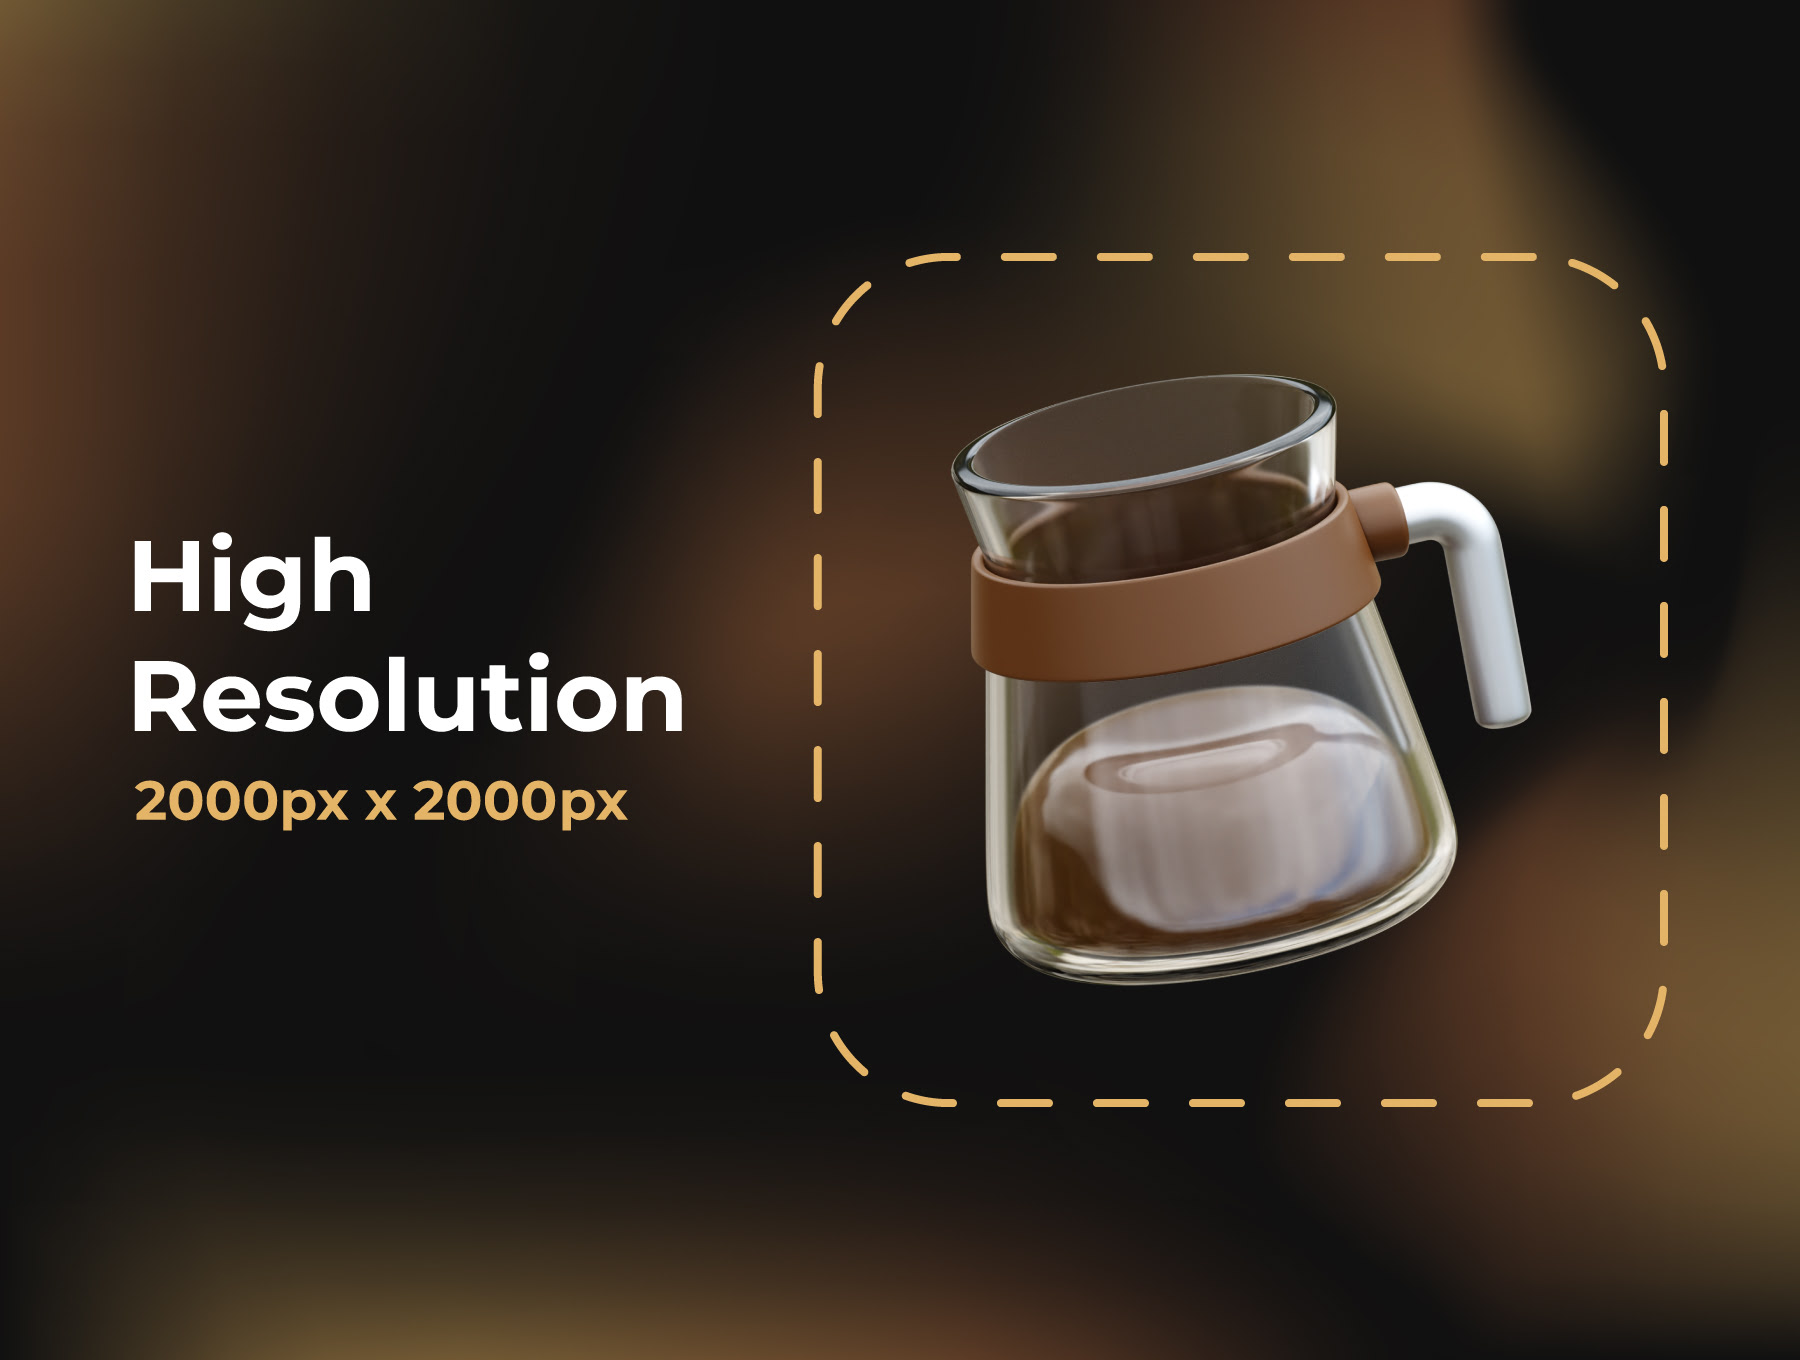 咖啡3D图标 Coffee 3D Icons blender, figma格式-3D/图标-到位啦UI